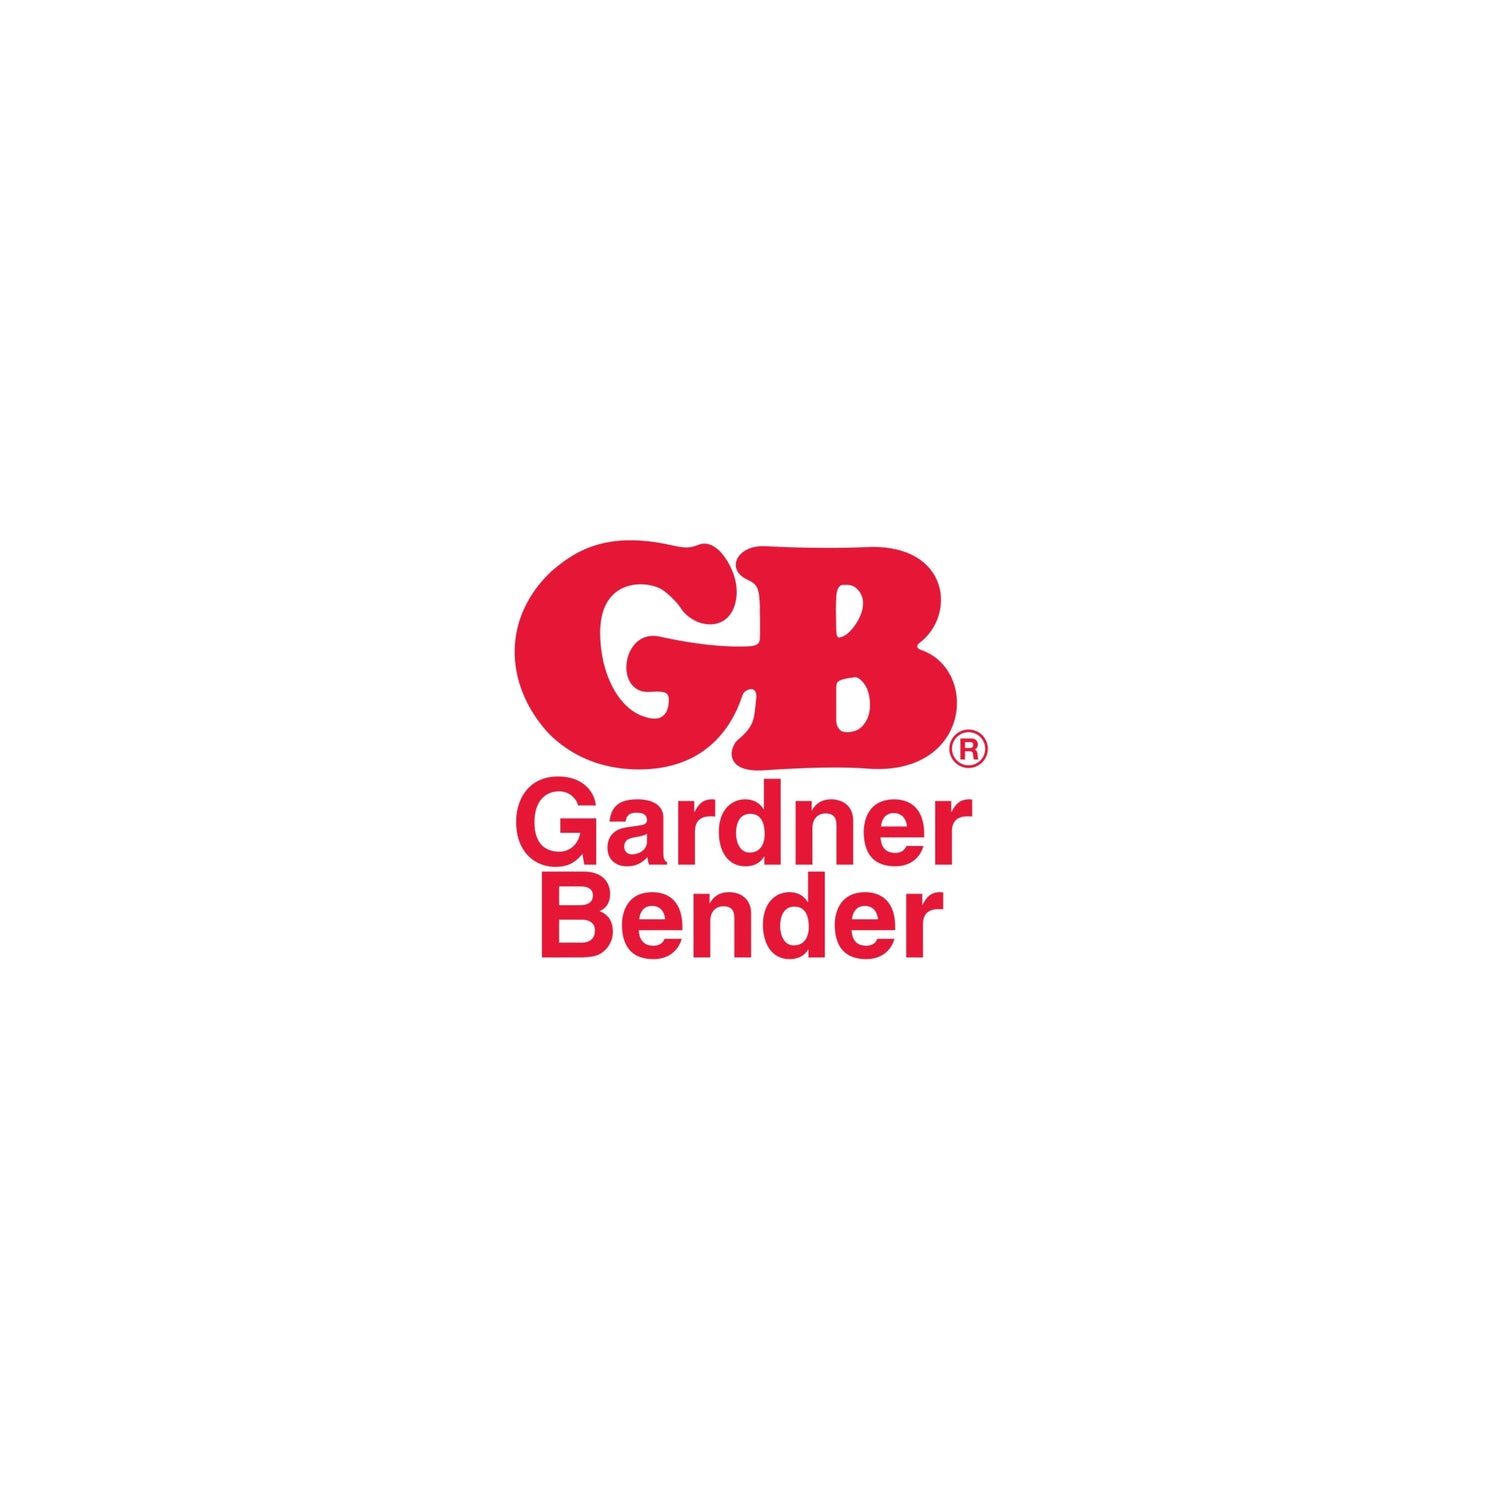 GB GARDNER BENDER